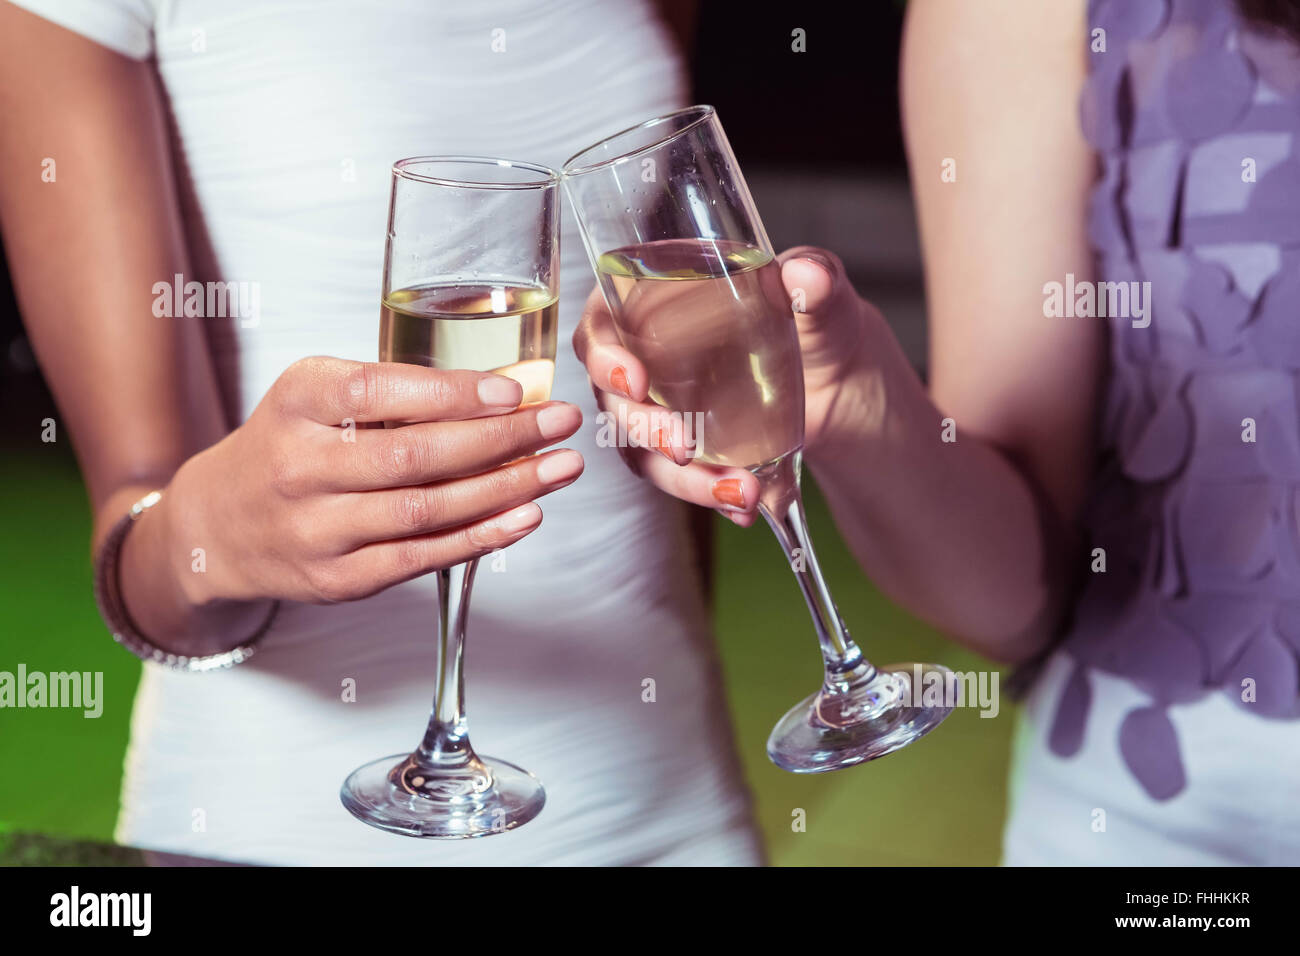 Las mujeres jóvenes de champagne de tostado Foto de stock